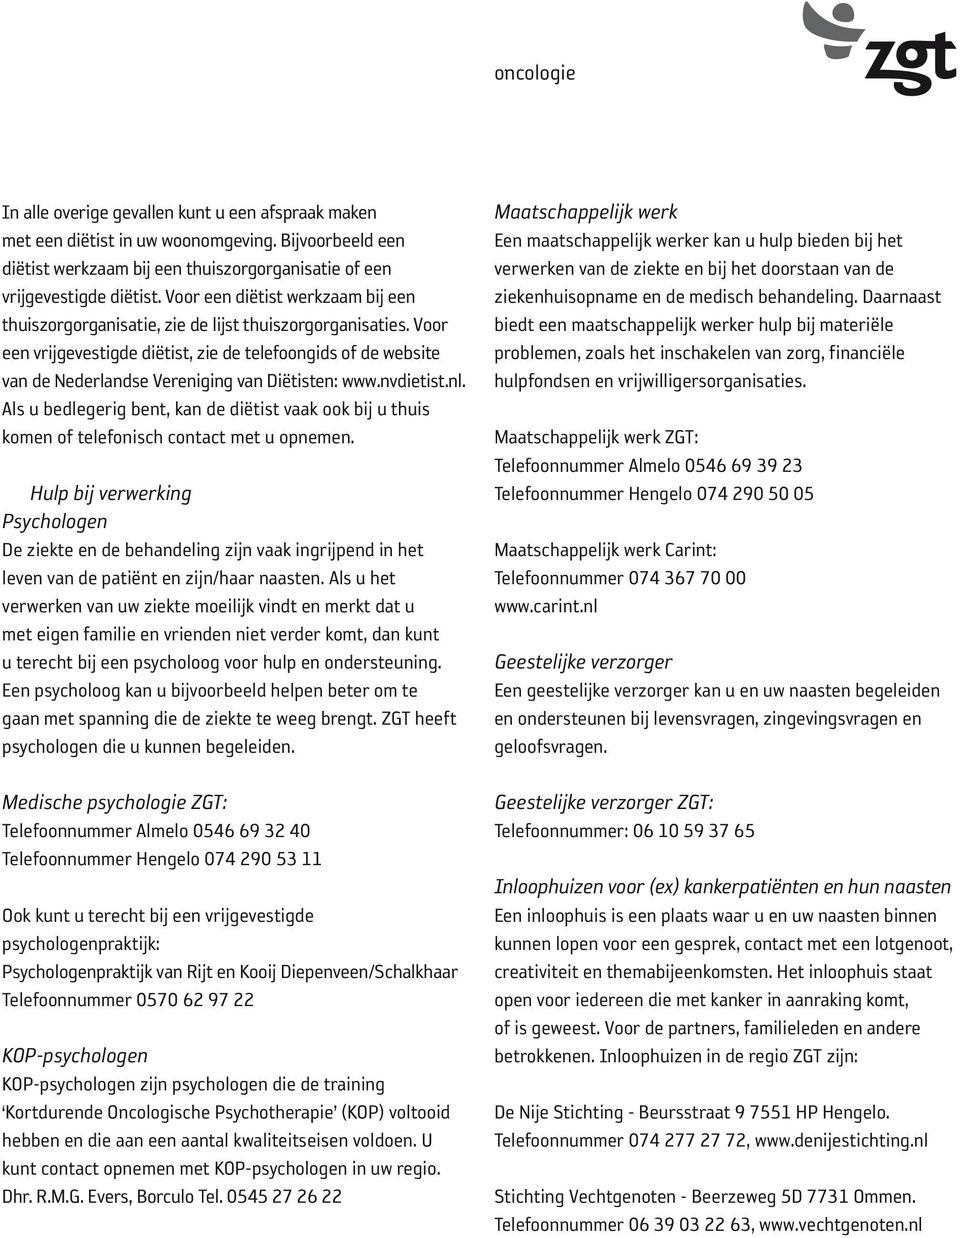 Voor een vrijgevestigde diëtist, zie de telefoongids of de website van de Nederlandse Vereniging van Diëtisten: www.nvdietist.nl.